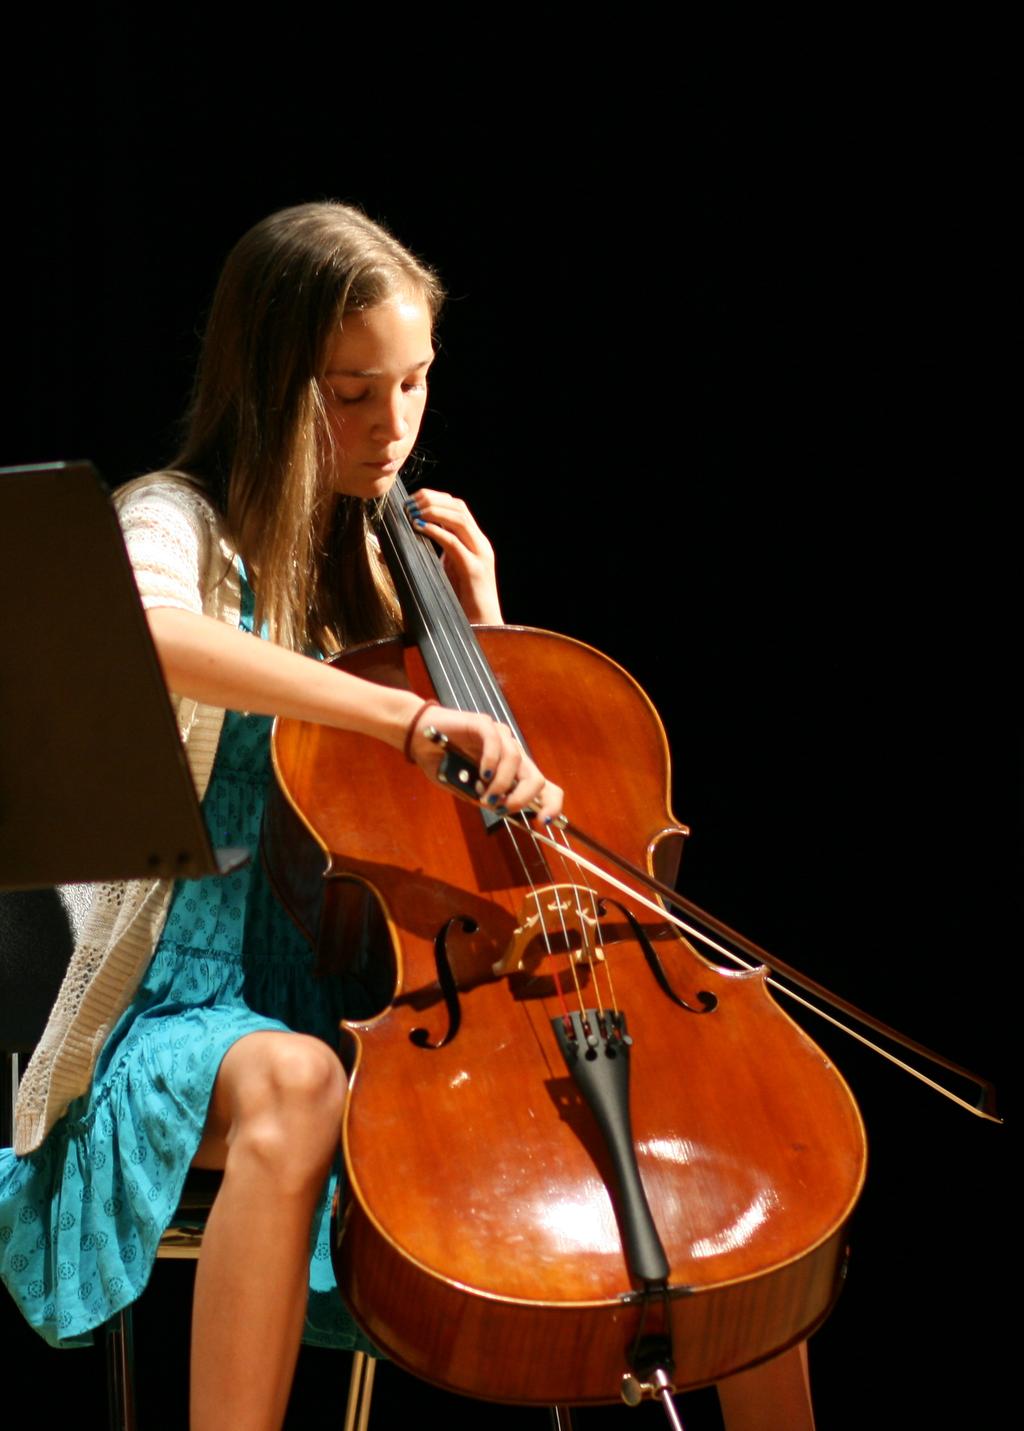 en klassisk stråkkvartett tillsammans med cello och viola Cello - Cello spelas genom att man drar en stråke över strängarna - Har 4 strängar - Tonhöjden förändras genom att man trycker ner strängarna